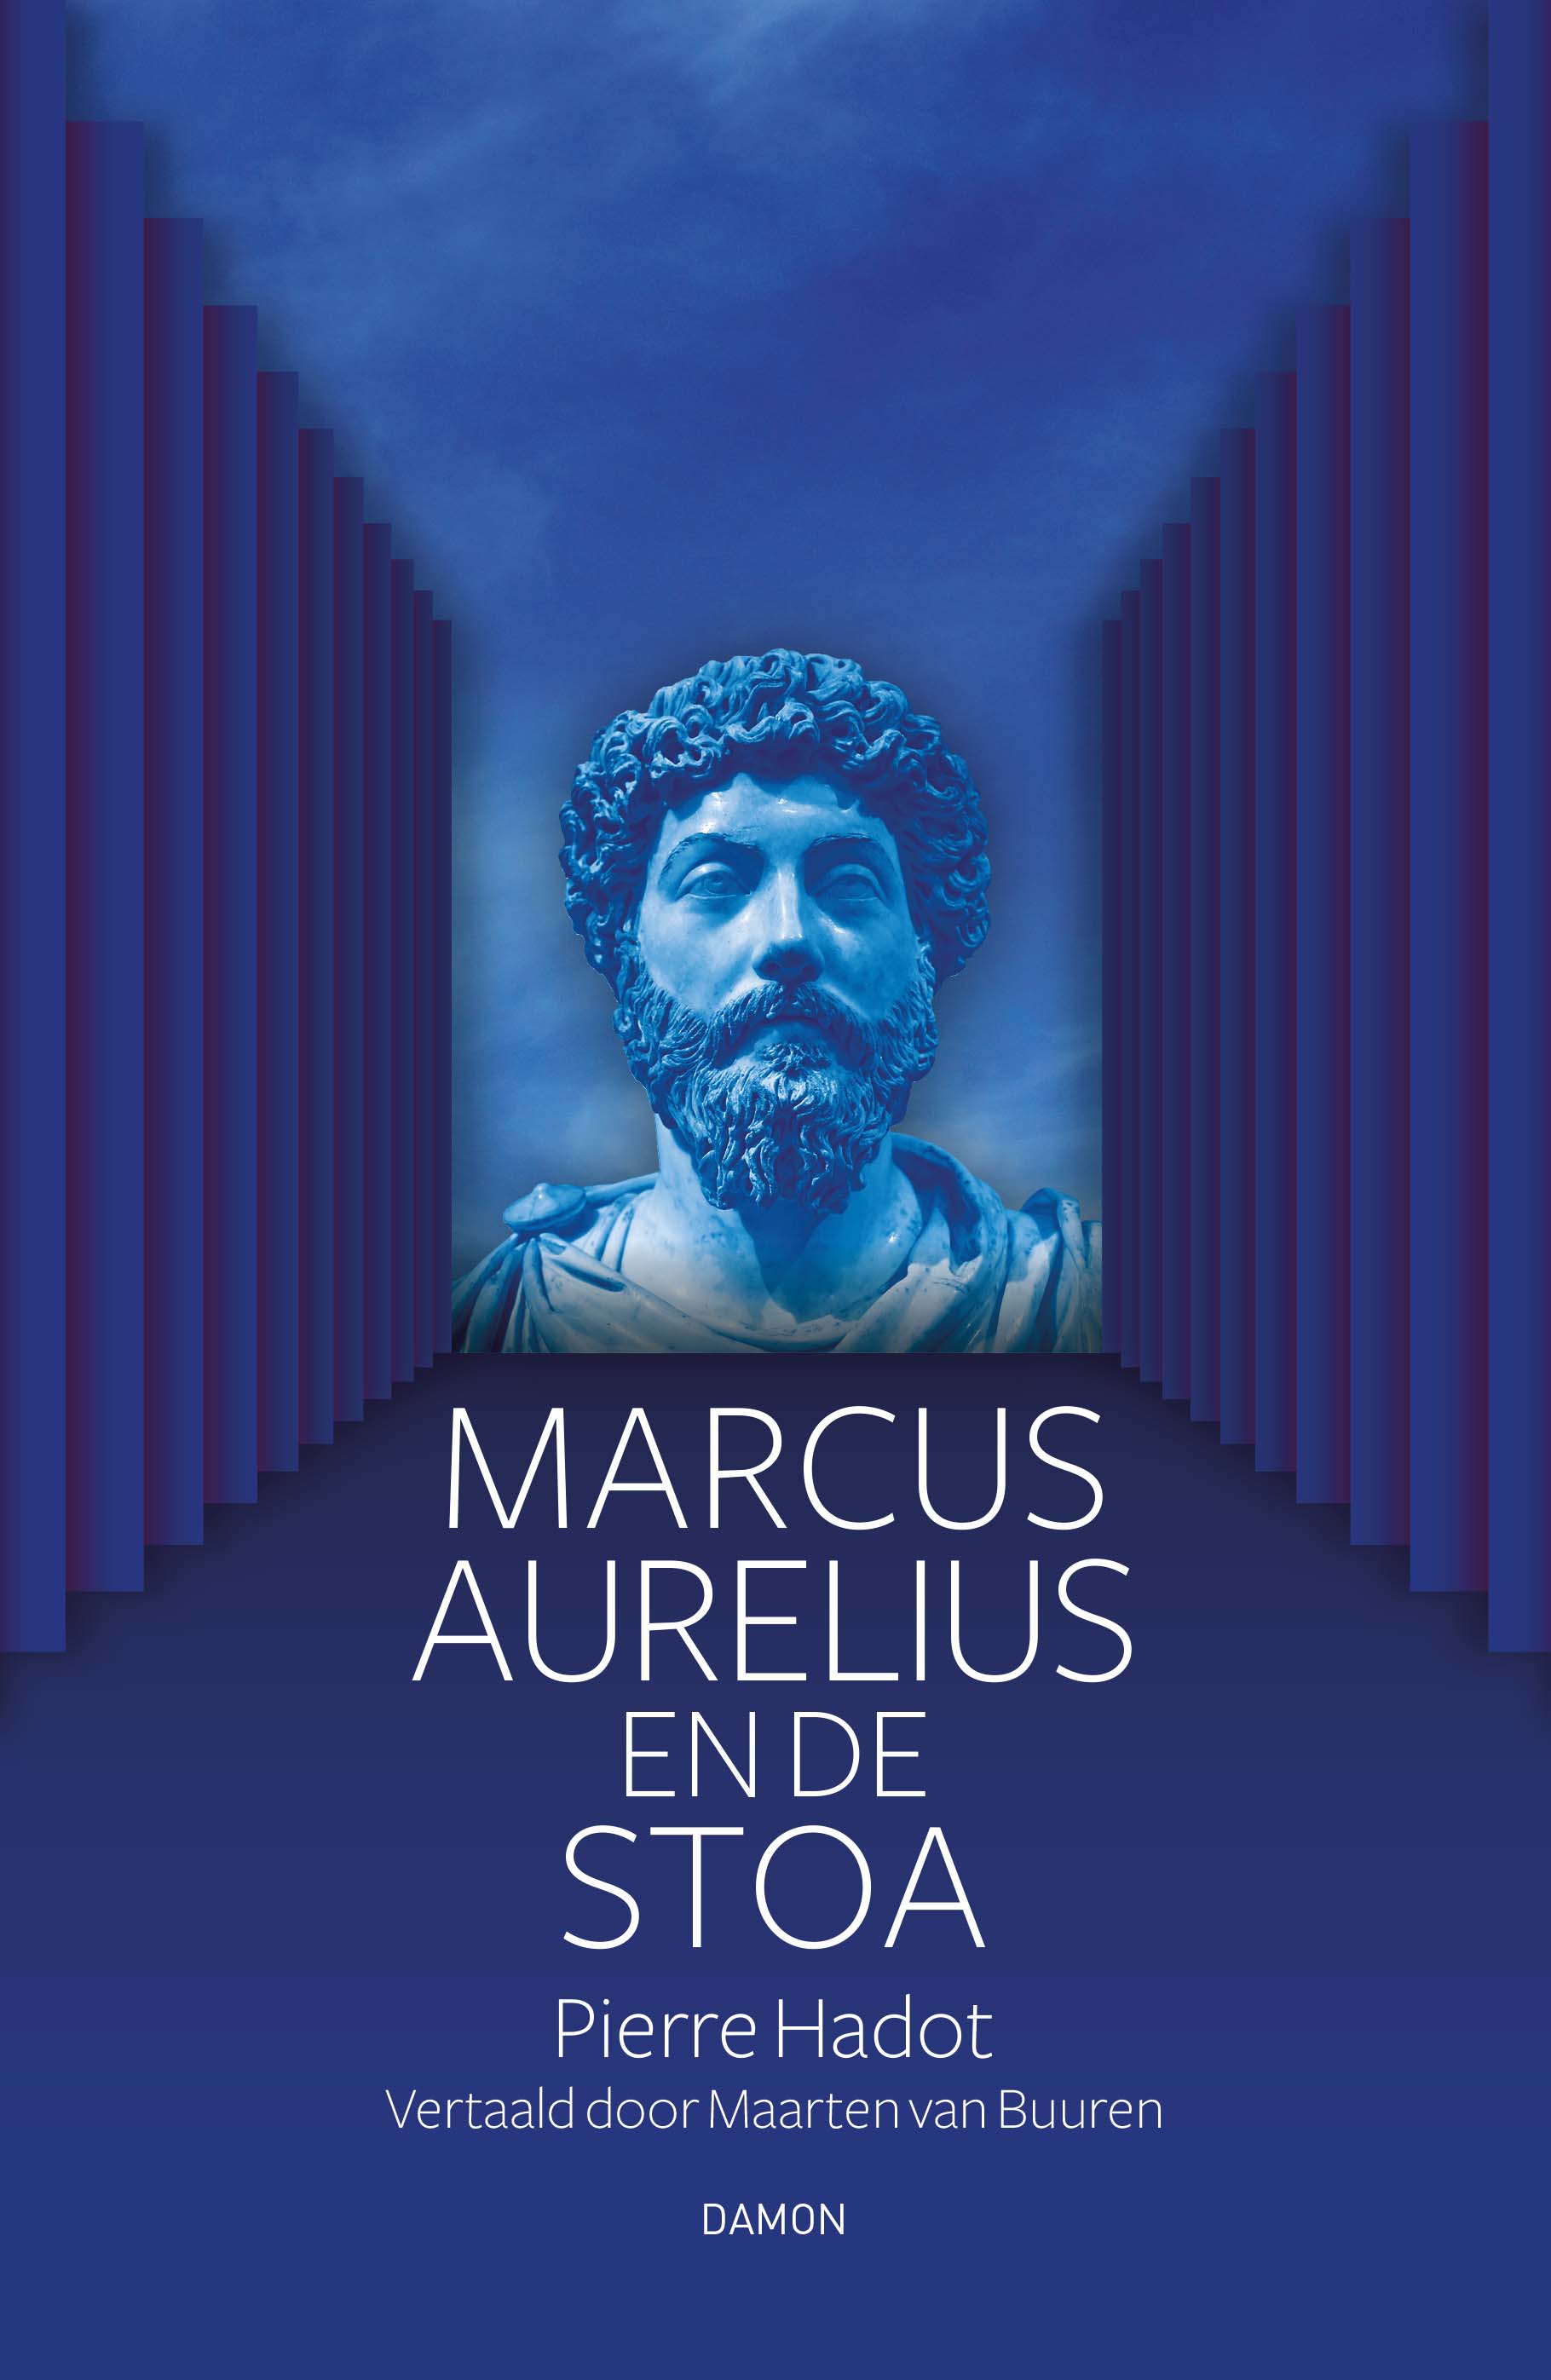 Uitnodiging lezing bij Boekhandel Boomker: Maarten van Buuren over Marcus Aurelius en de Stoa